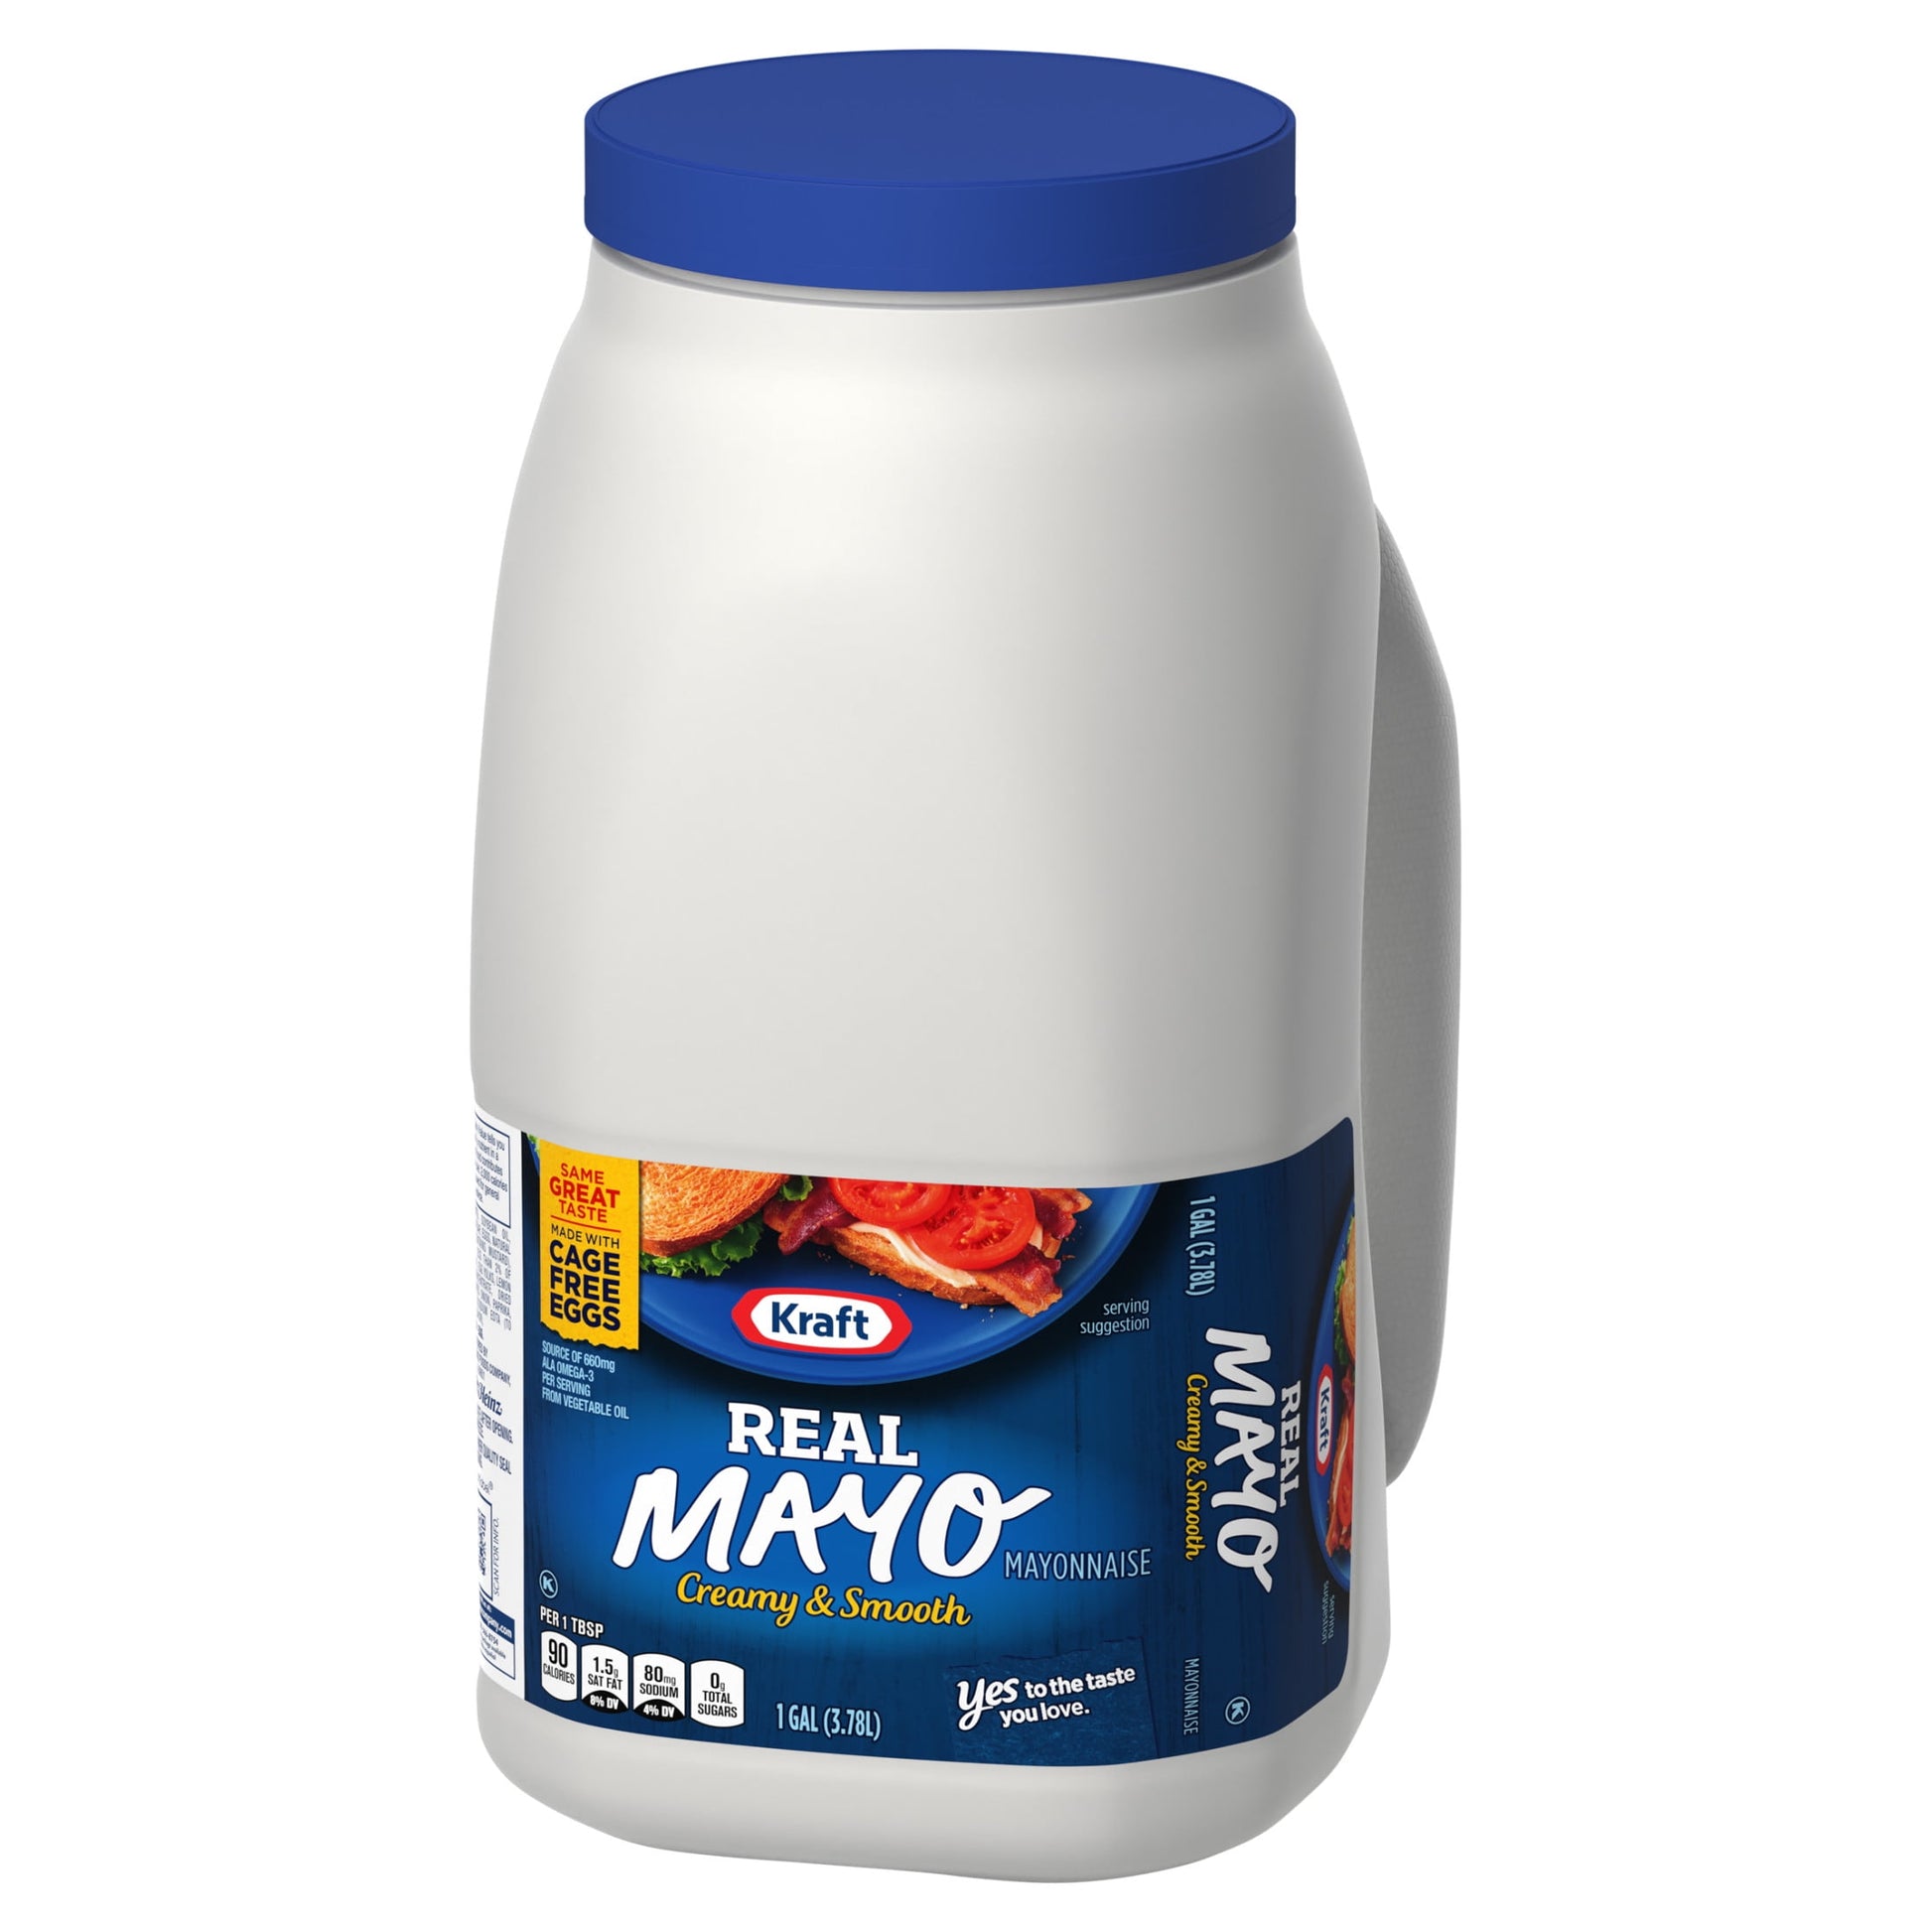 Real Mayo Creamy & Smooth Mayonnaise, 1 Gal Jug